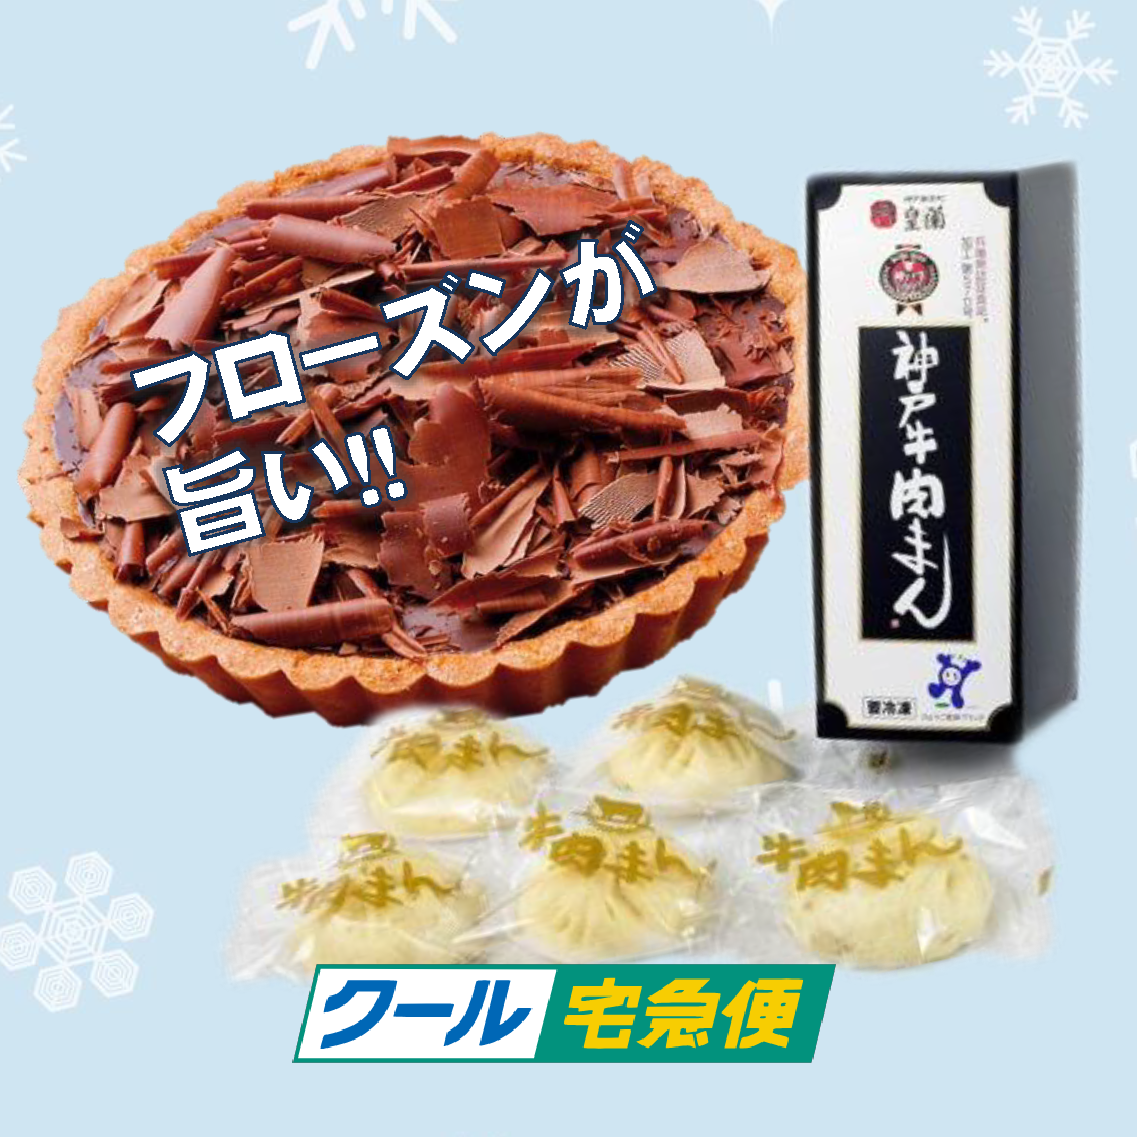 神戸お土産専門店「神戸ブランド」がおすすめする冷凍食品です